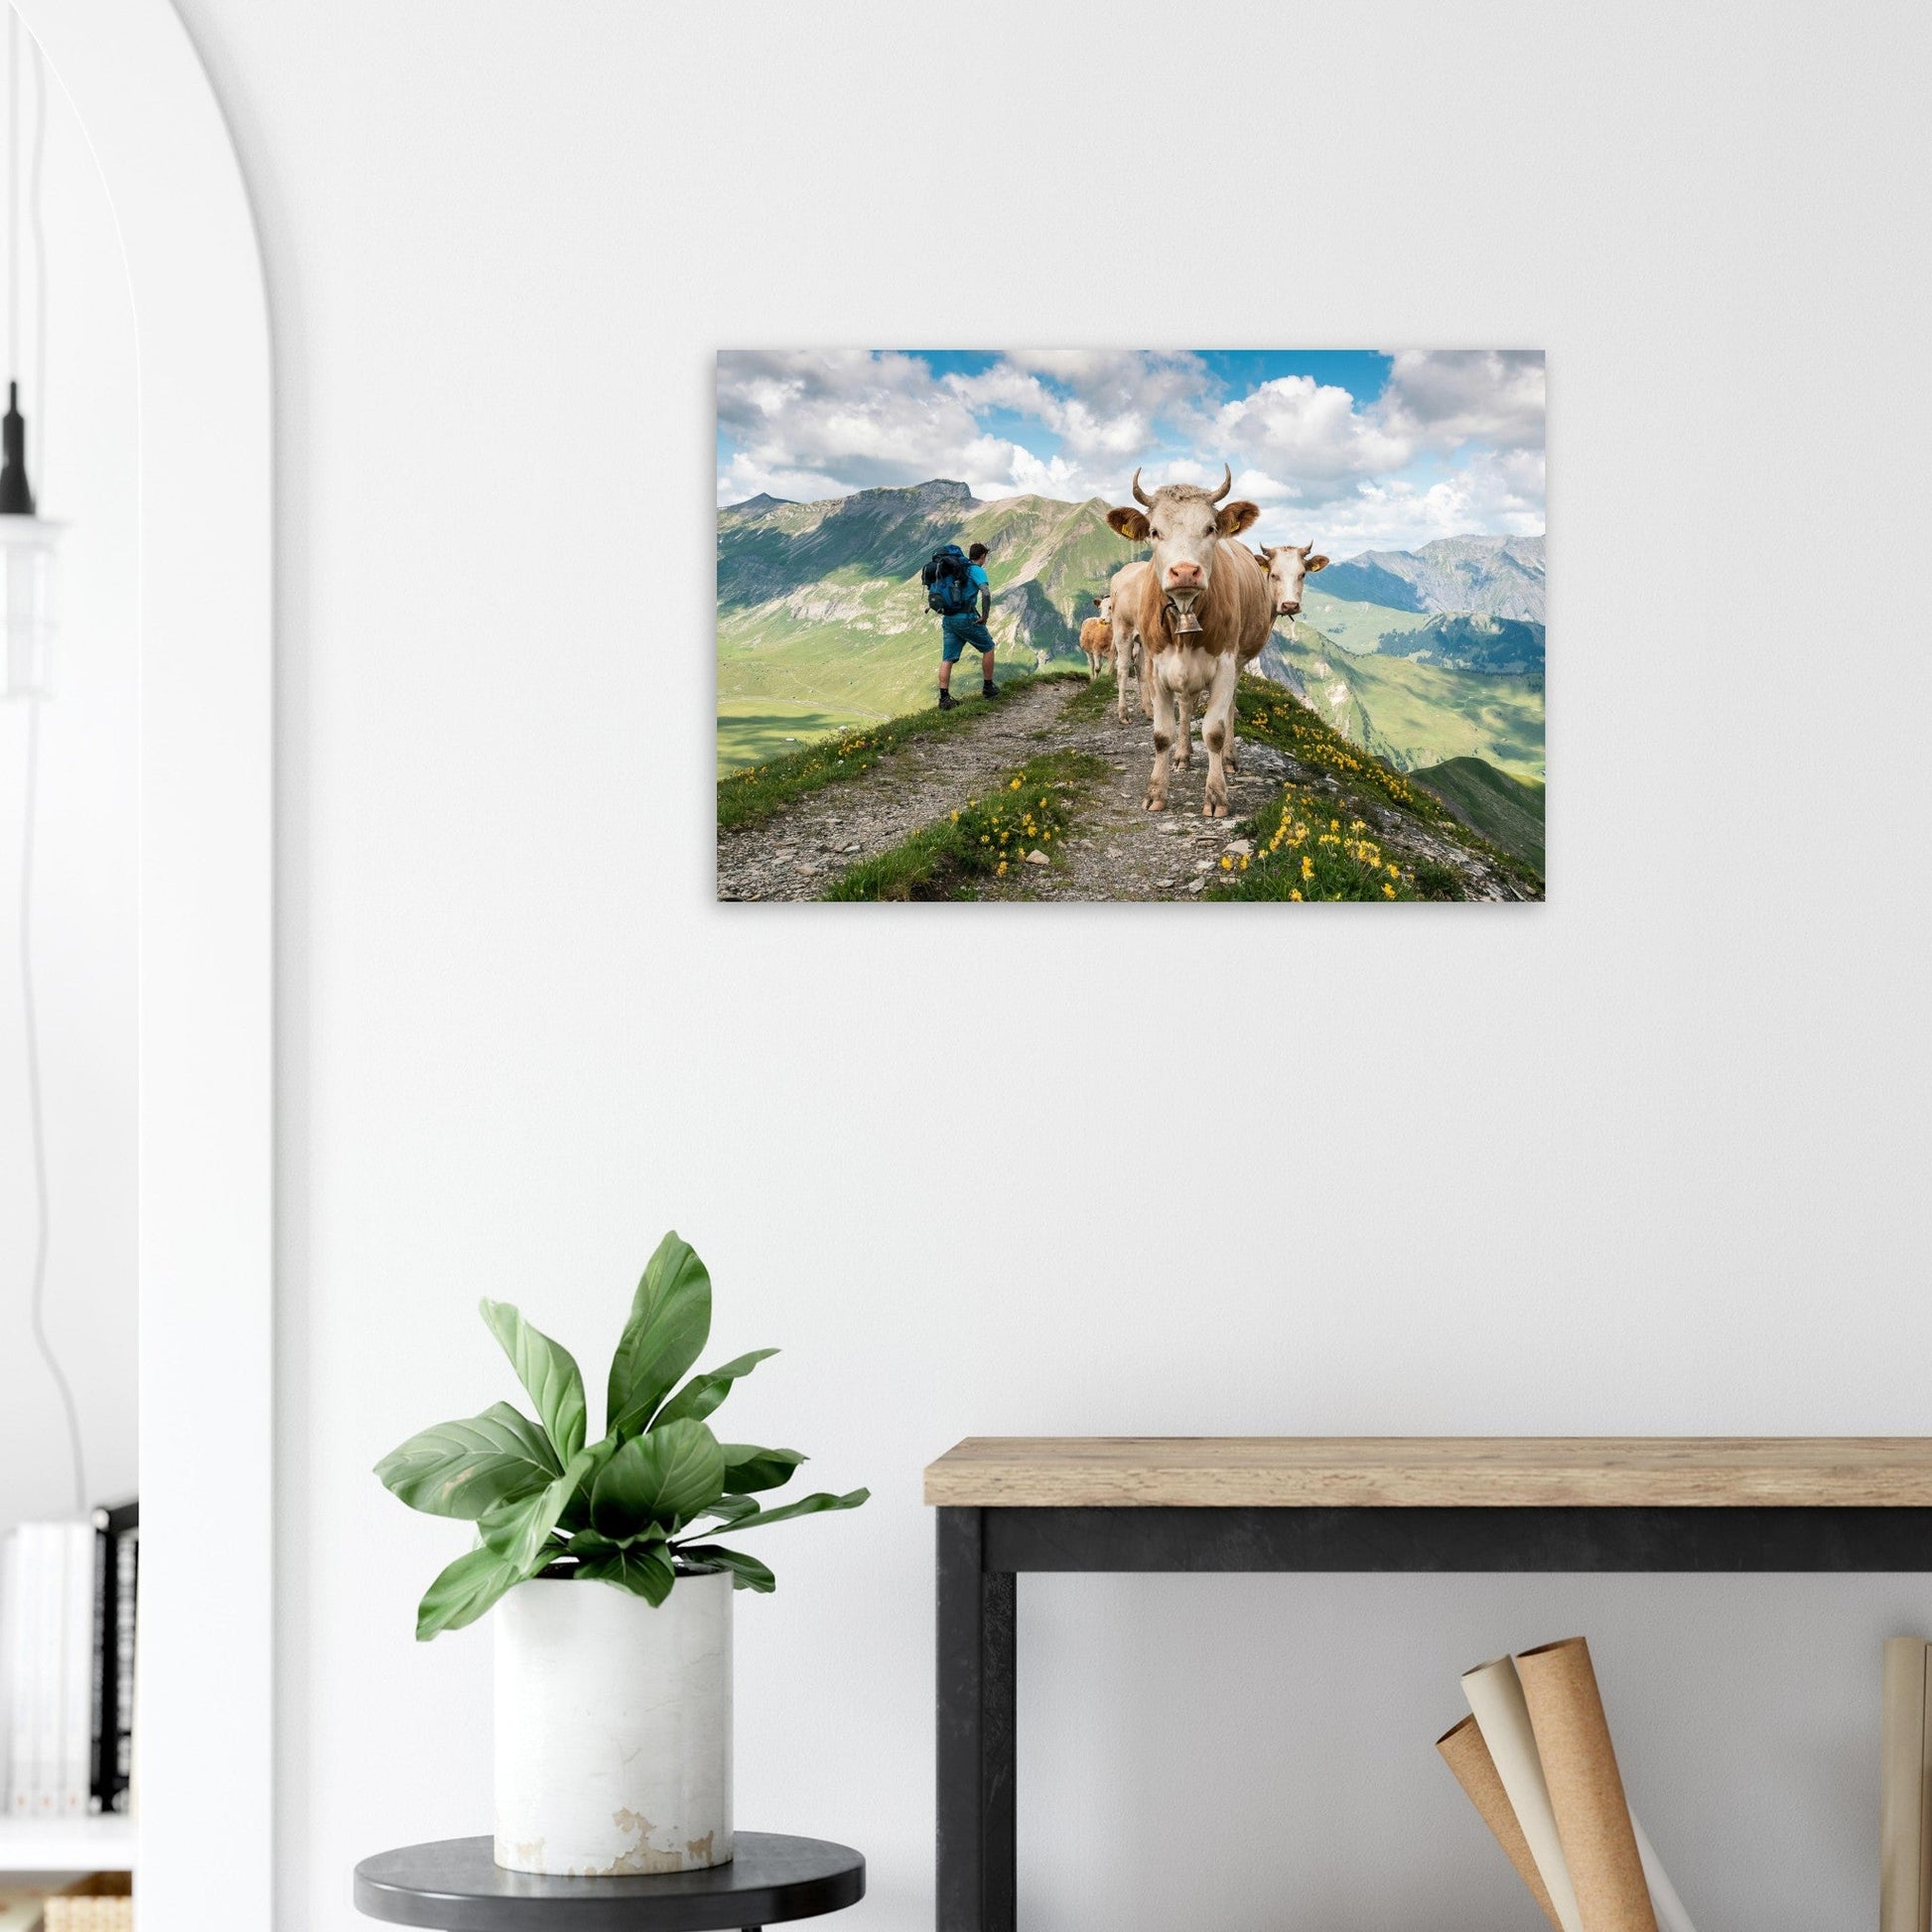 Vente Photo de vaches sur un chemin en Savoie #1 - Tableau photo paysage